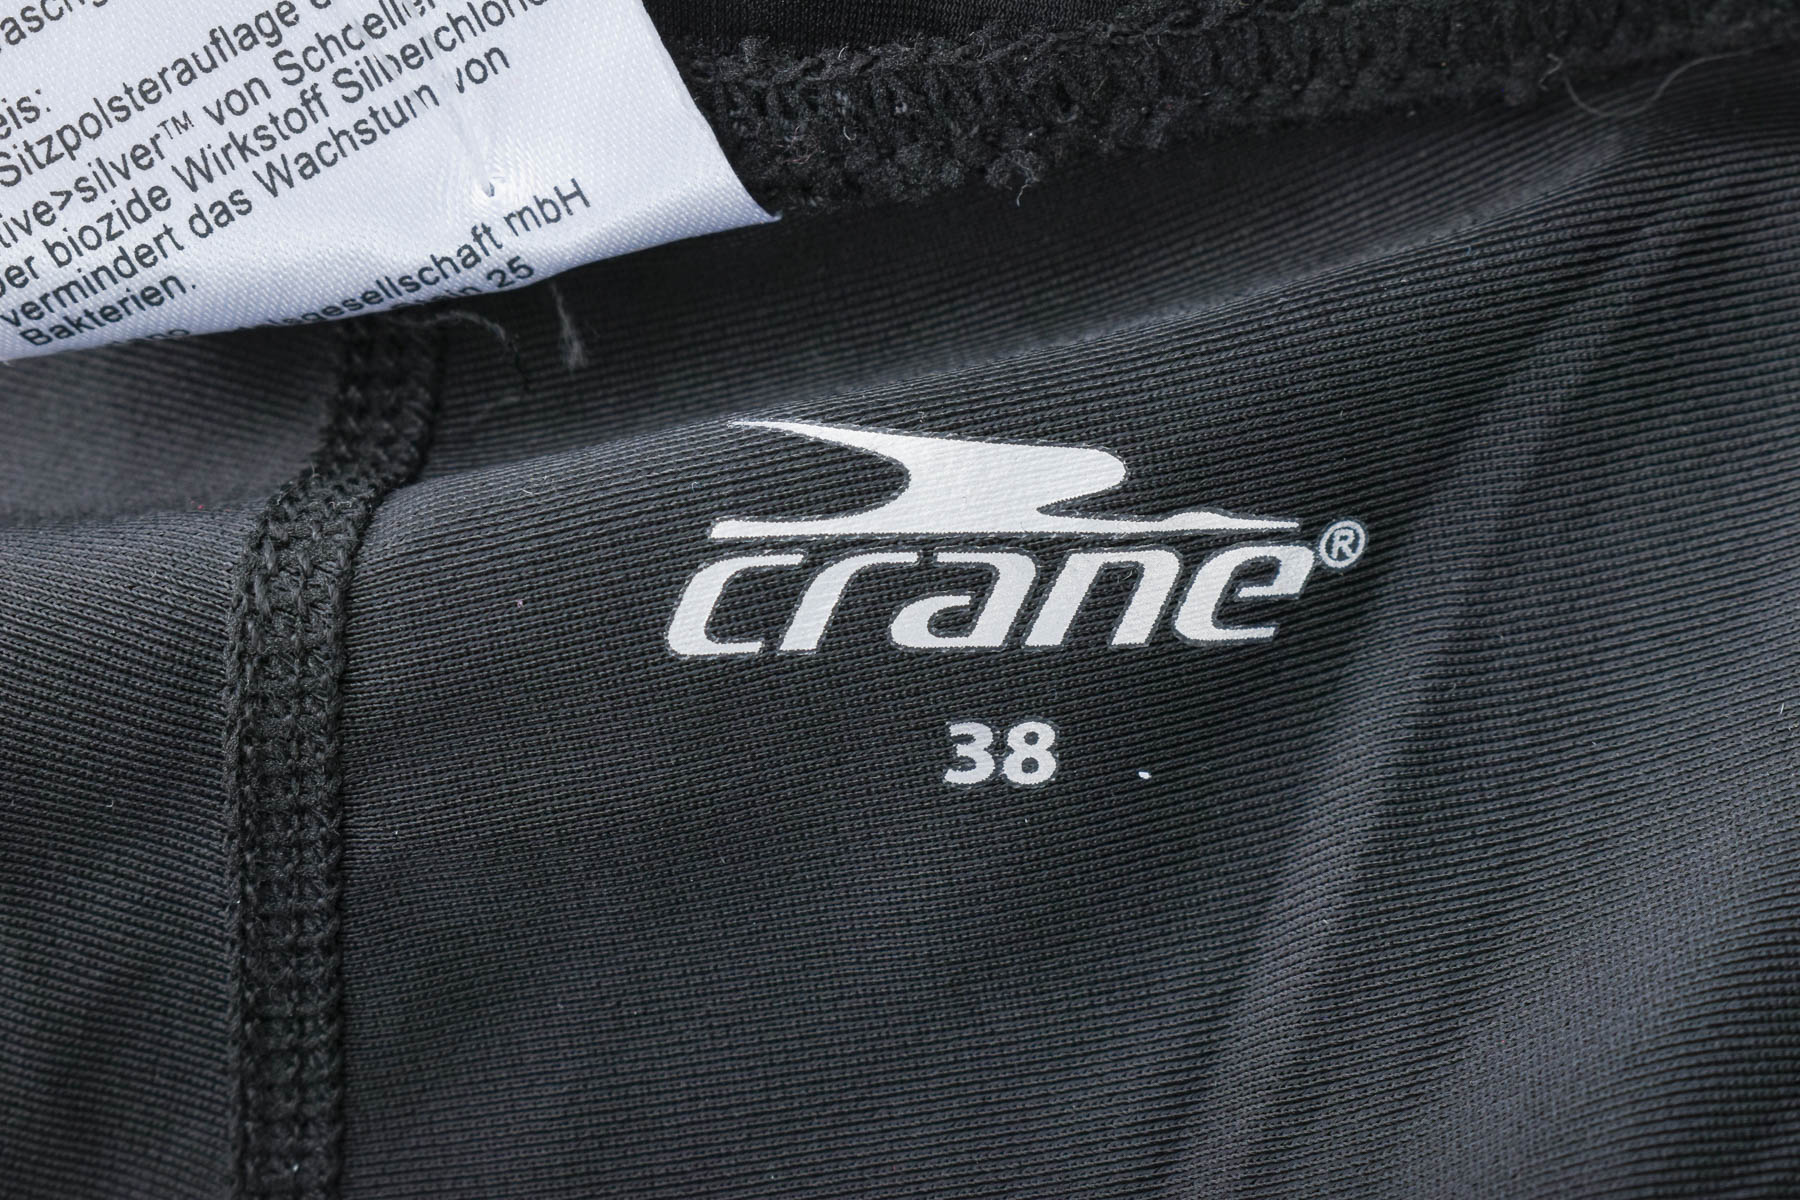 Trening de damă pentru bicicletă - Crane - 2